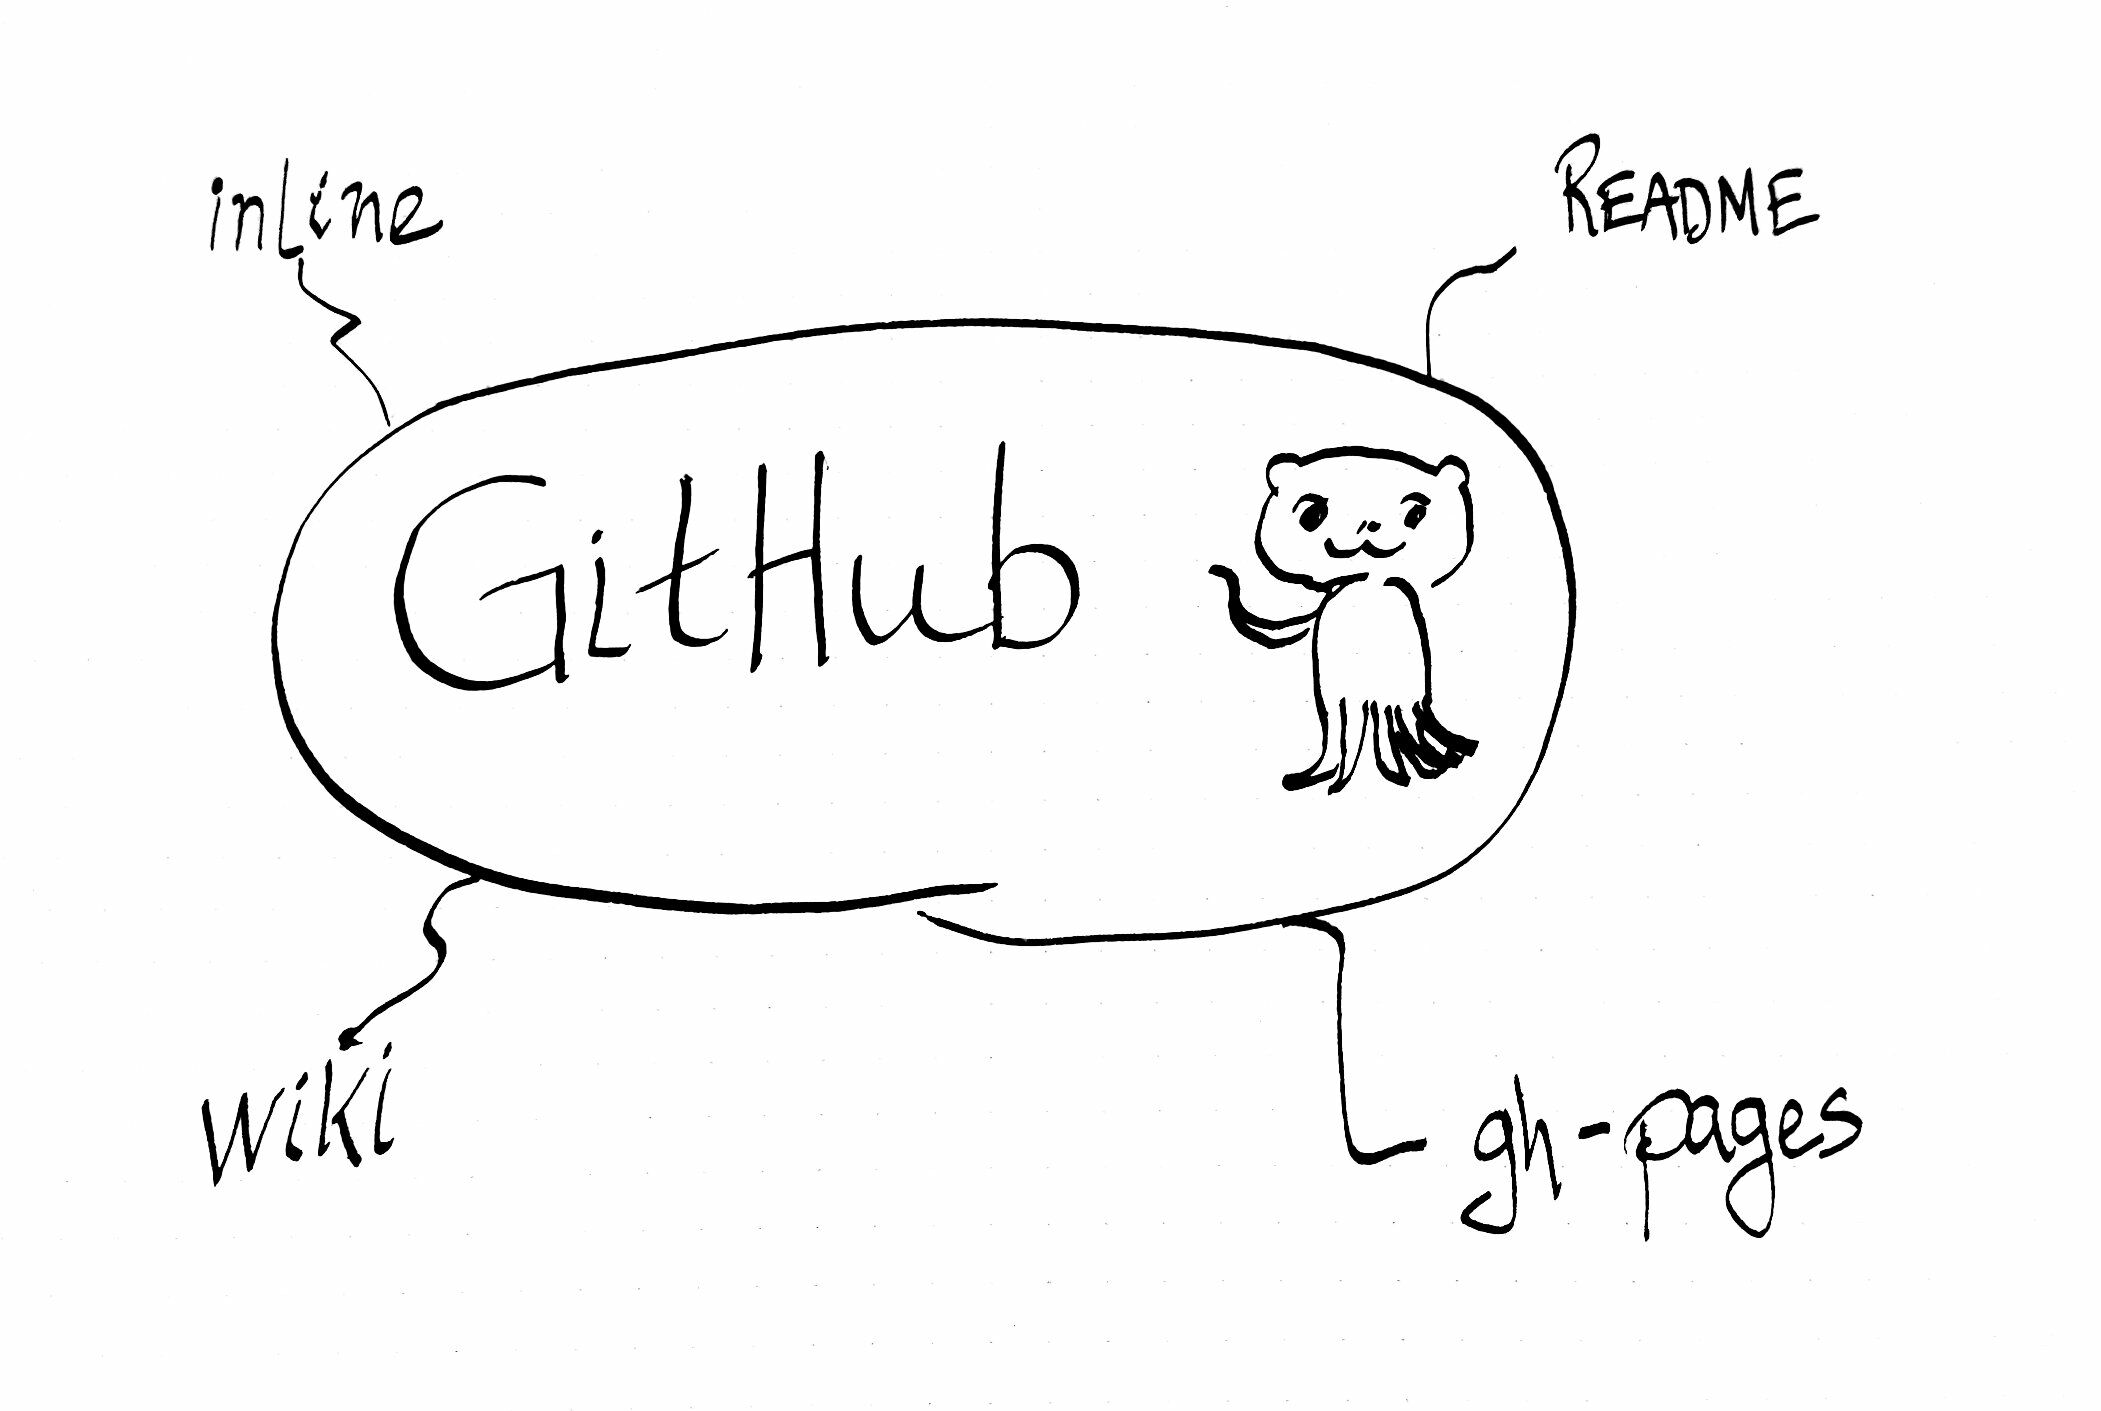 04-24-github-wiki.md